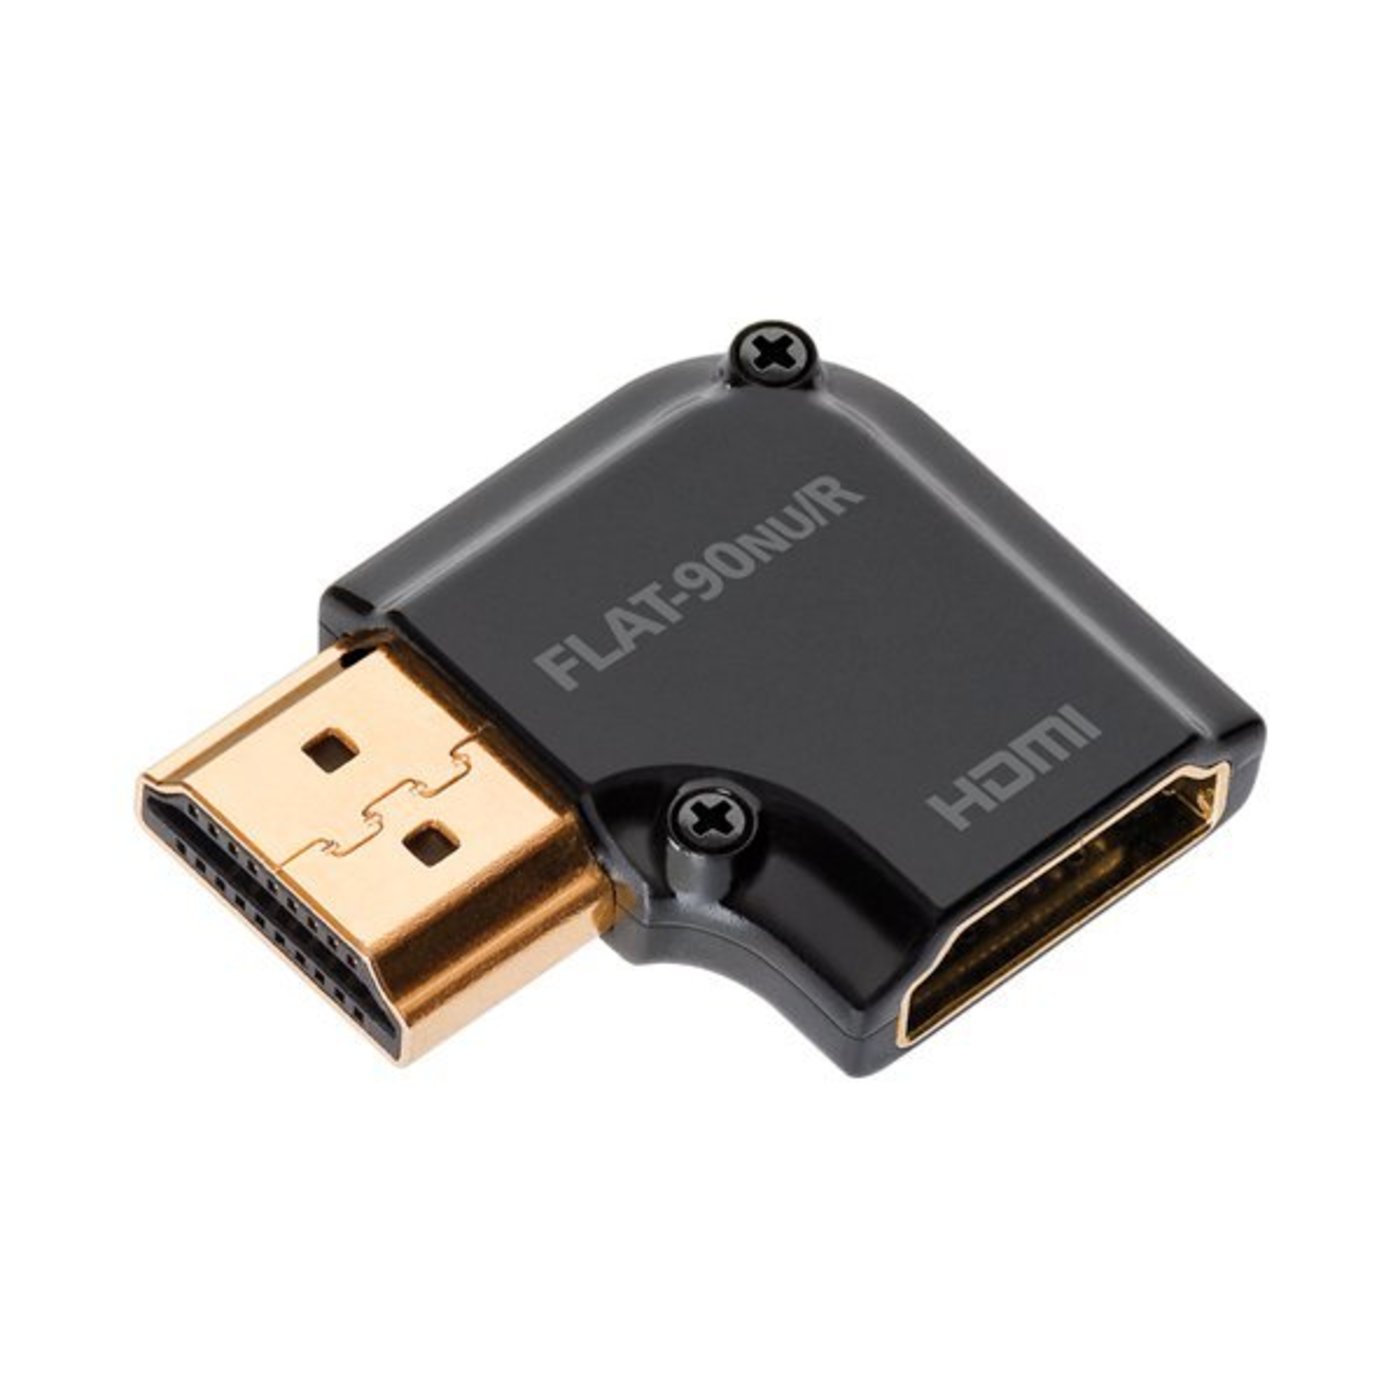 AudioQuest HDMI 90°NU/R Adapter